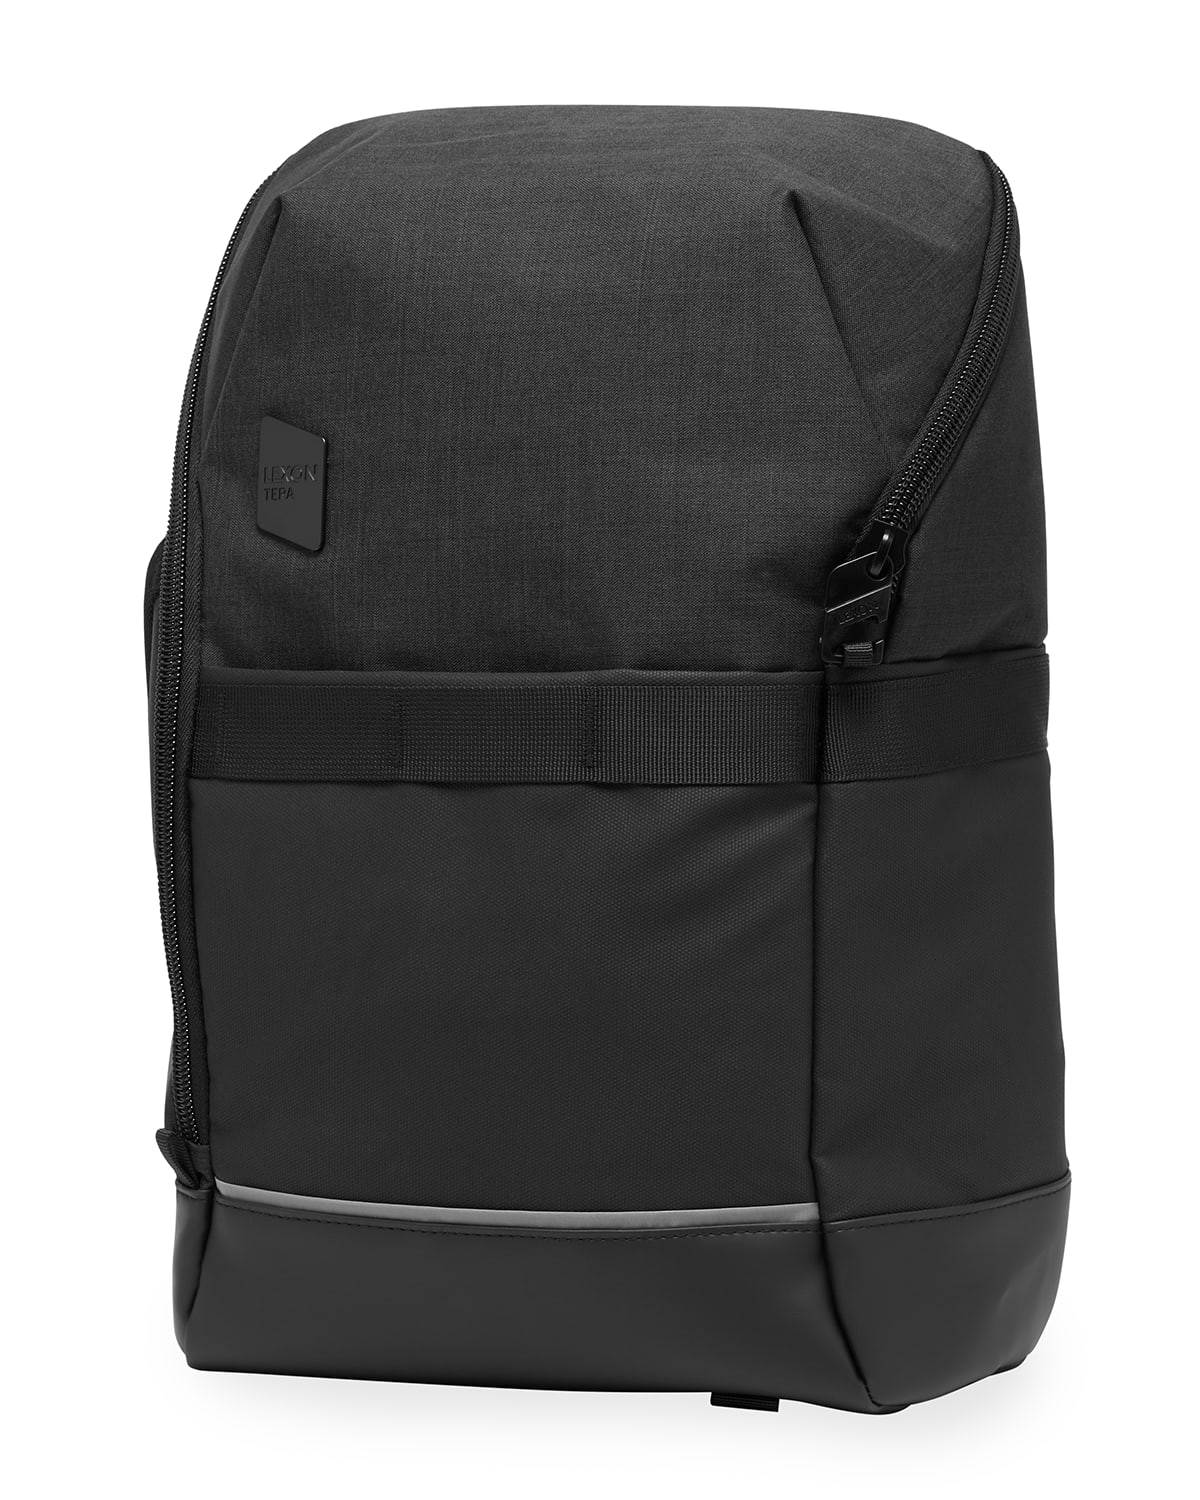 Lexon Design Tera Backpack for 15" Laptop